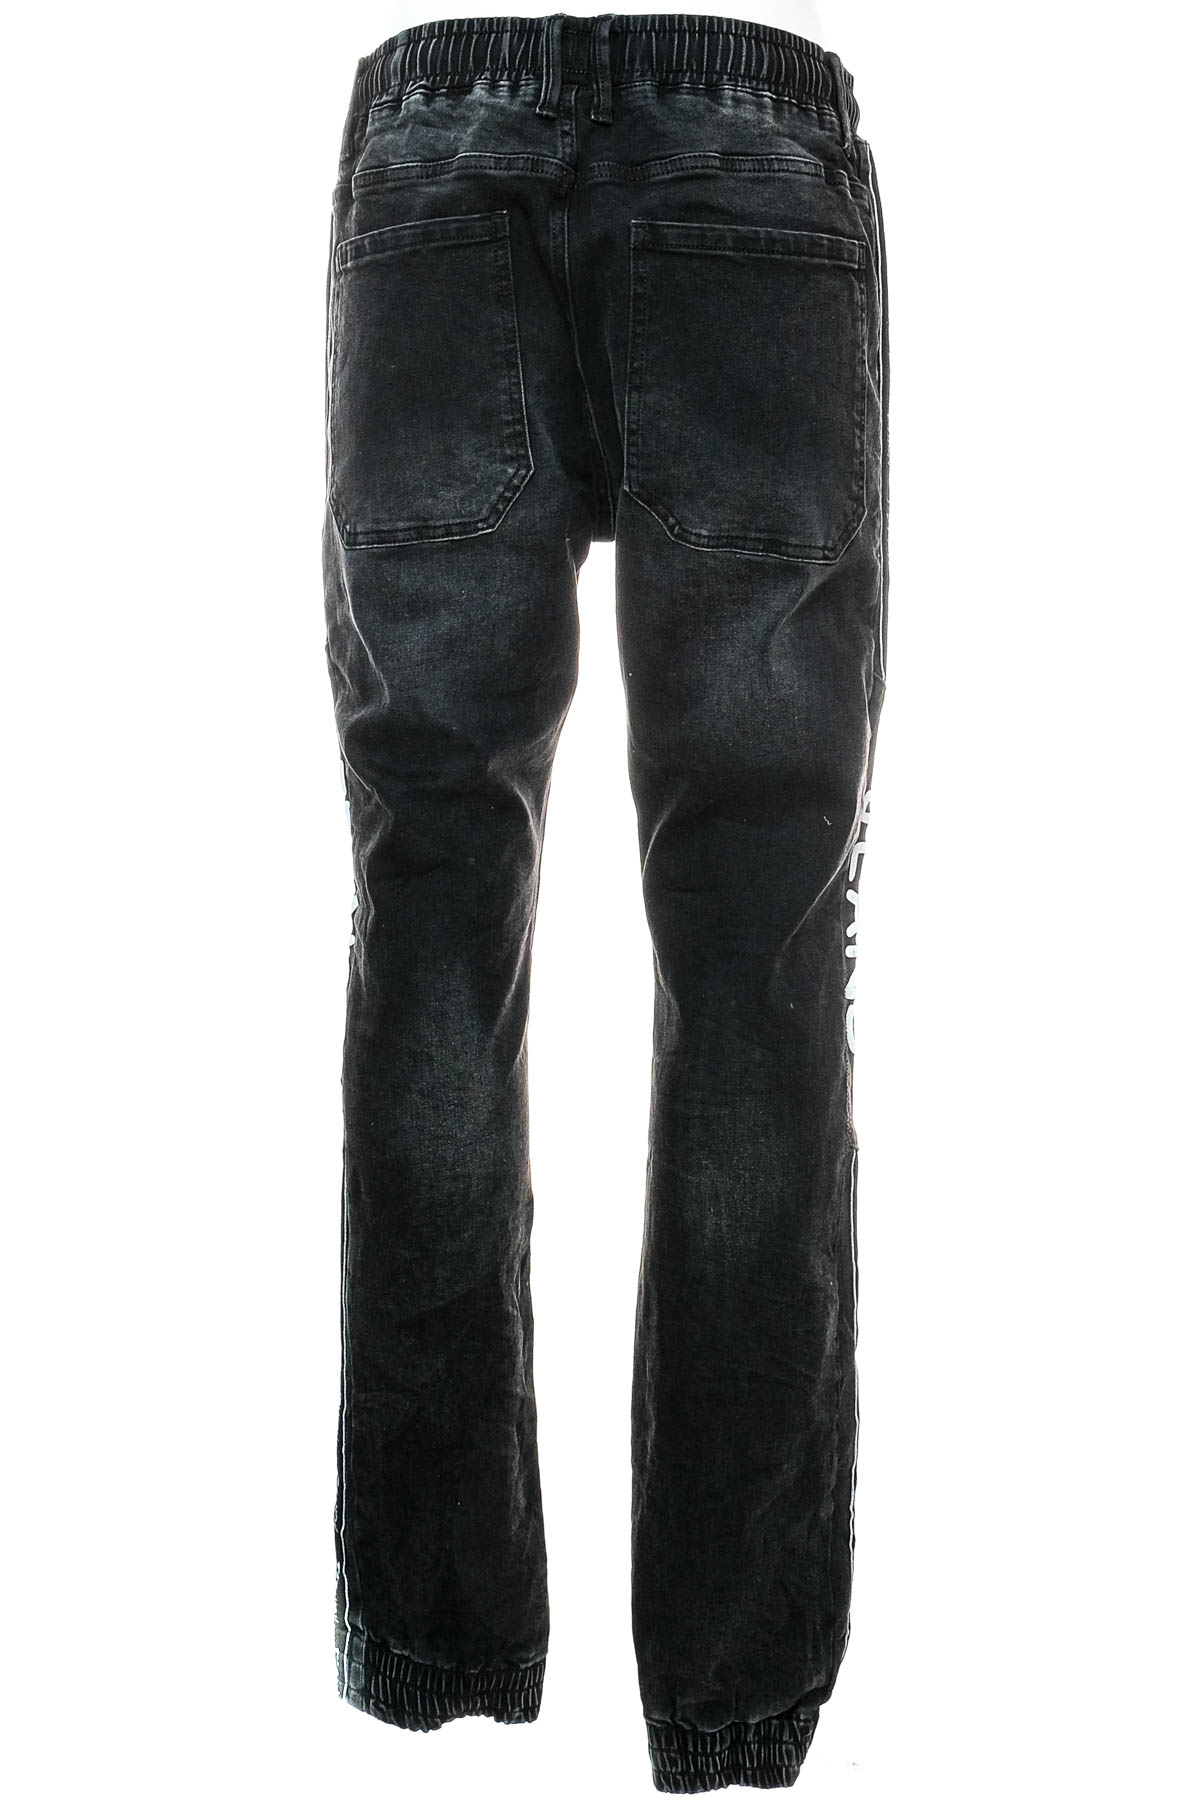 Jeans pentru bărbăți - DROMEDAR - 1